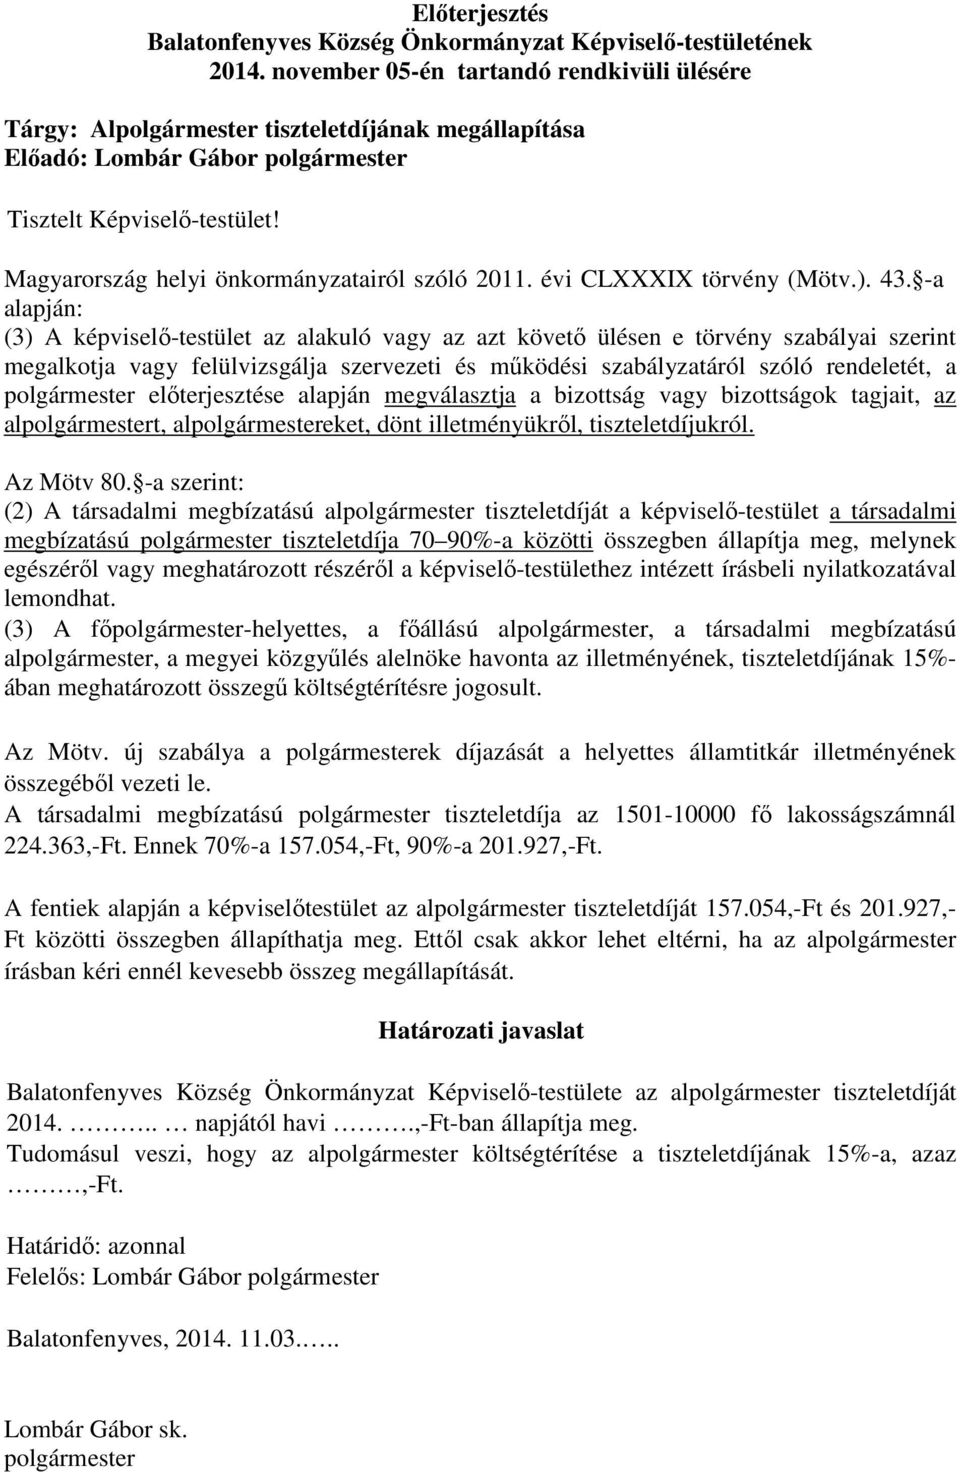 Magyarország helyi önkormányzatairól szóló 2011. évi CLXXXIX törvény (Mötv.). 43.